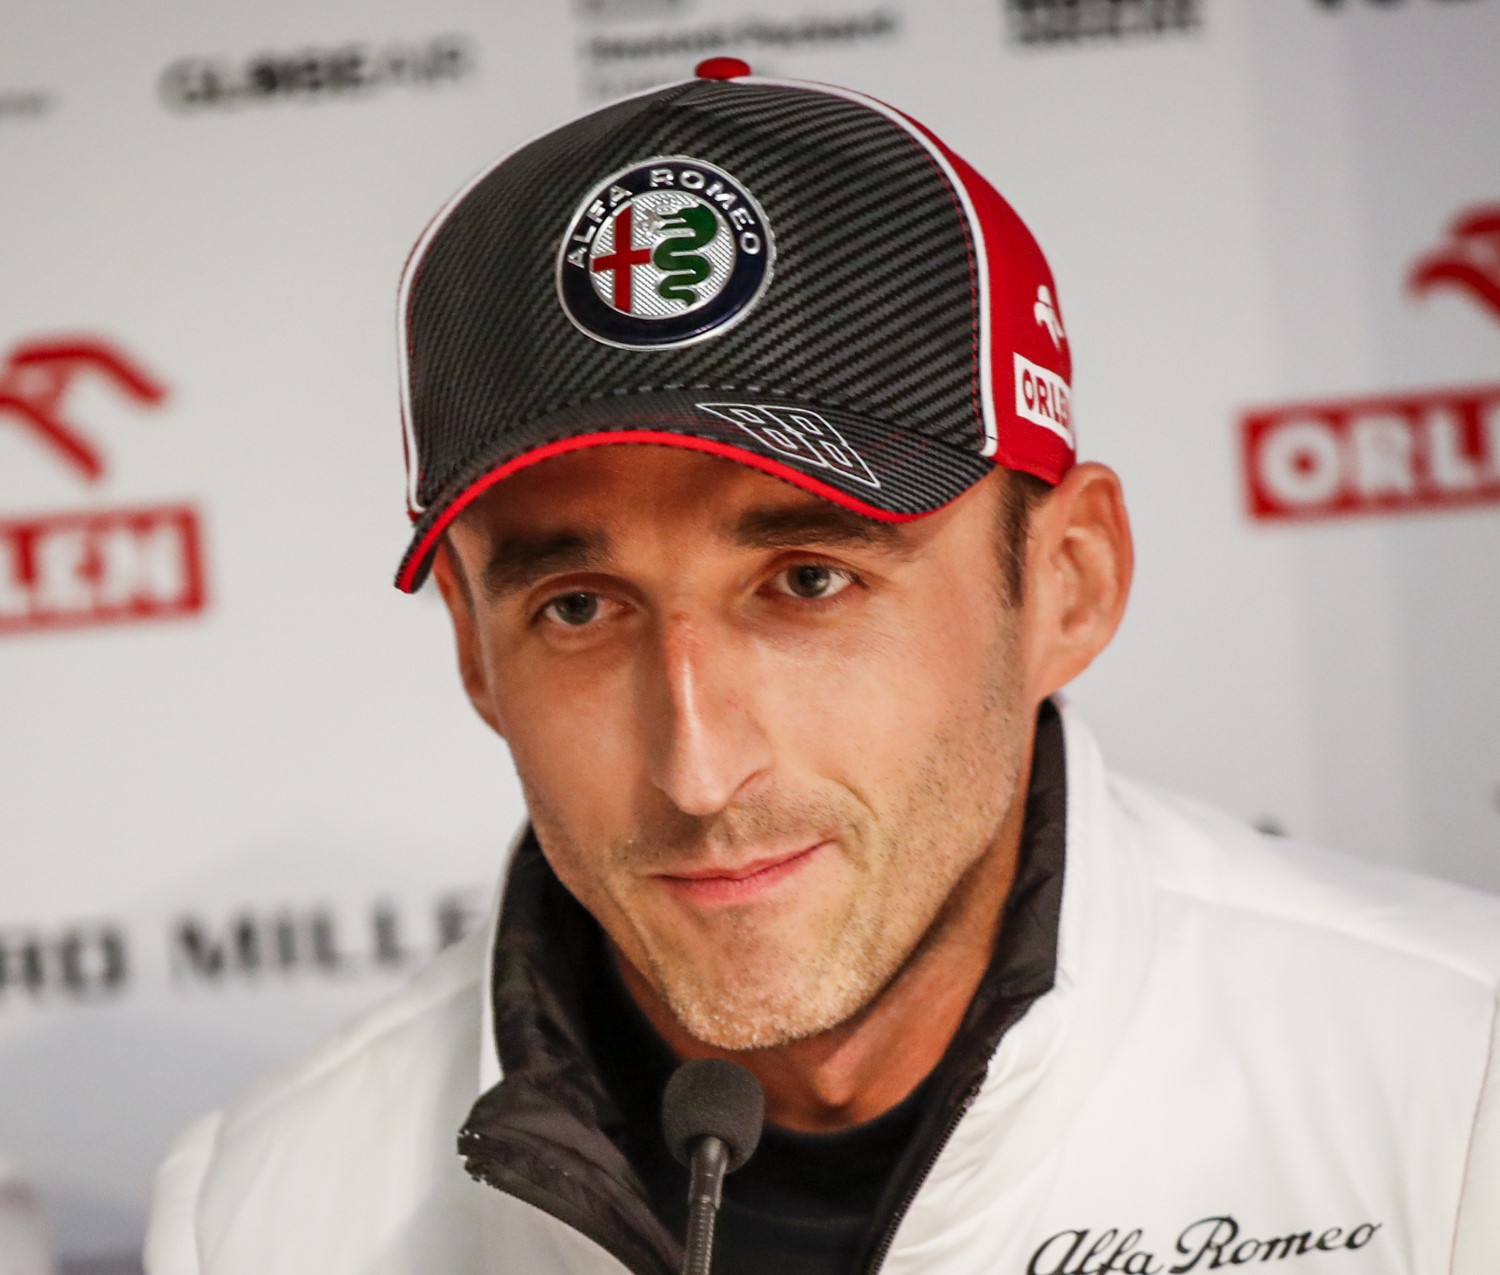 Robert Kubica, fast in the Alfa Romeo this year preseason testing, pans slug Williams car